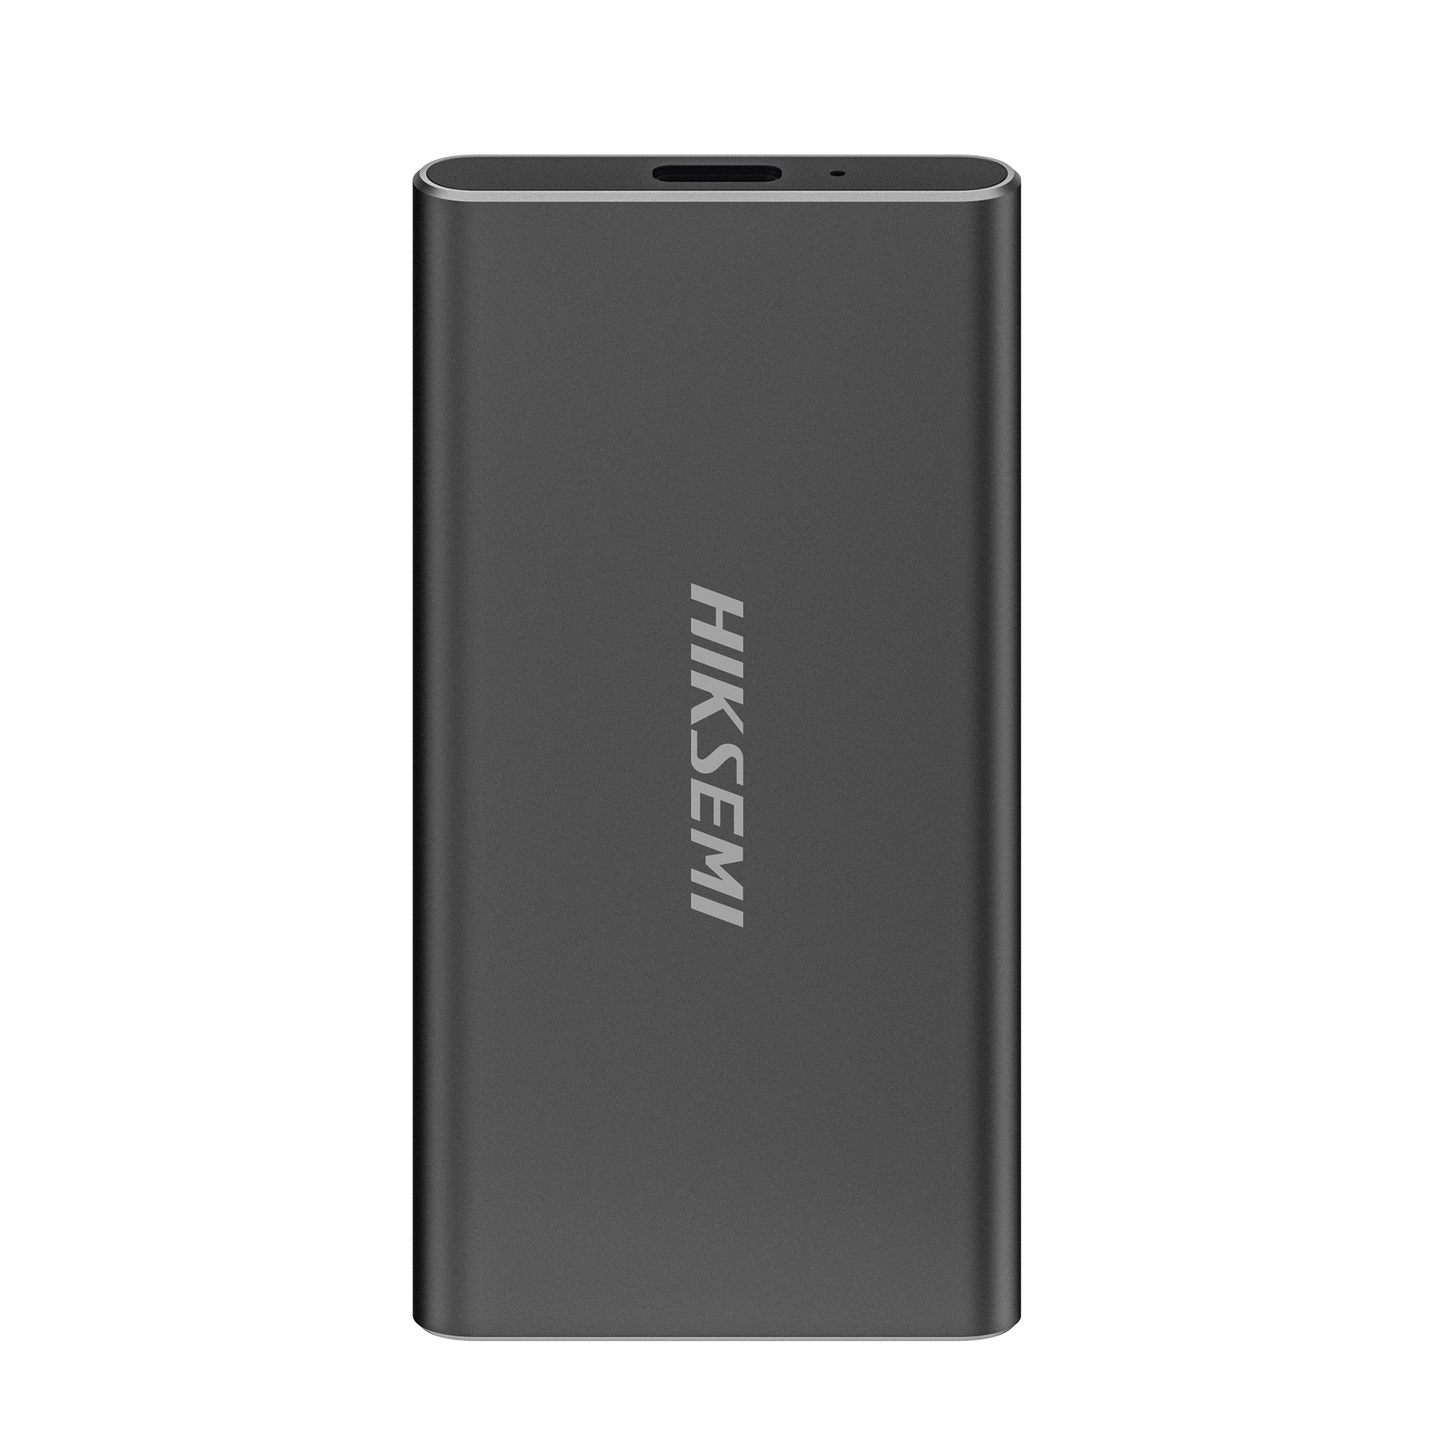 Unidad de Estado Solido (SSD) Portátil / 1024 GB / Conector USB 3.2 / Tipo C / Ideal para Almacenar Cualquier Tipo de Información (Videos, Fotos, Documentos, Etc...)